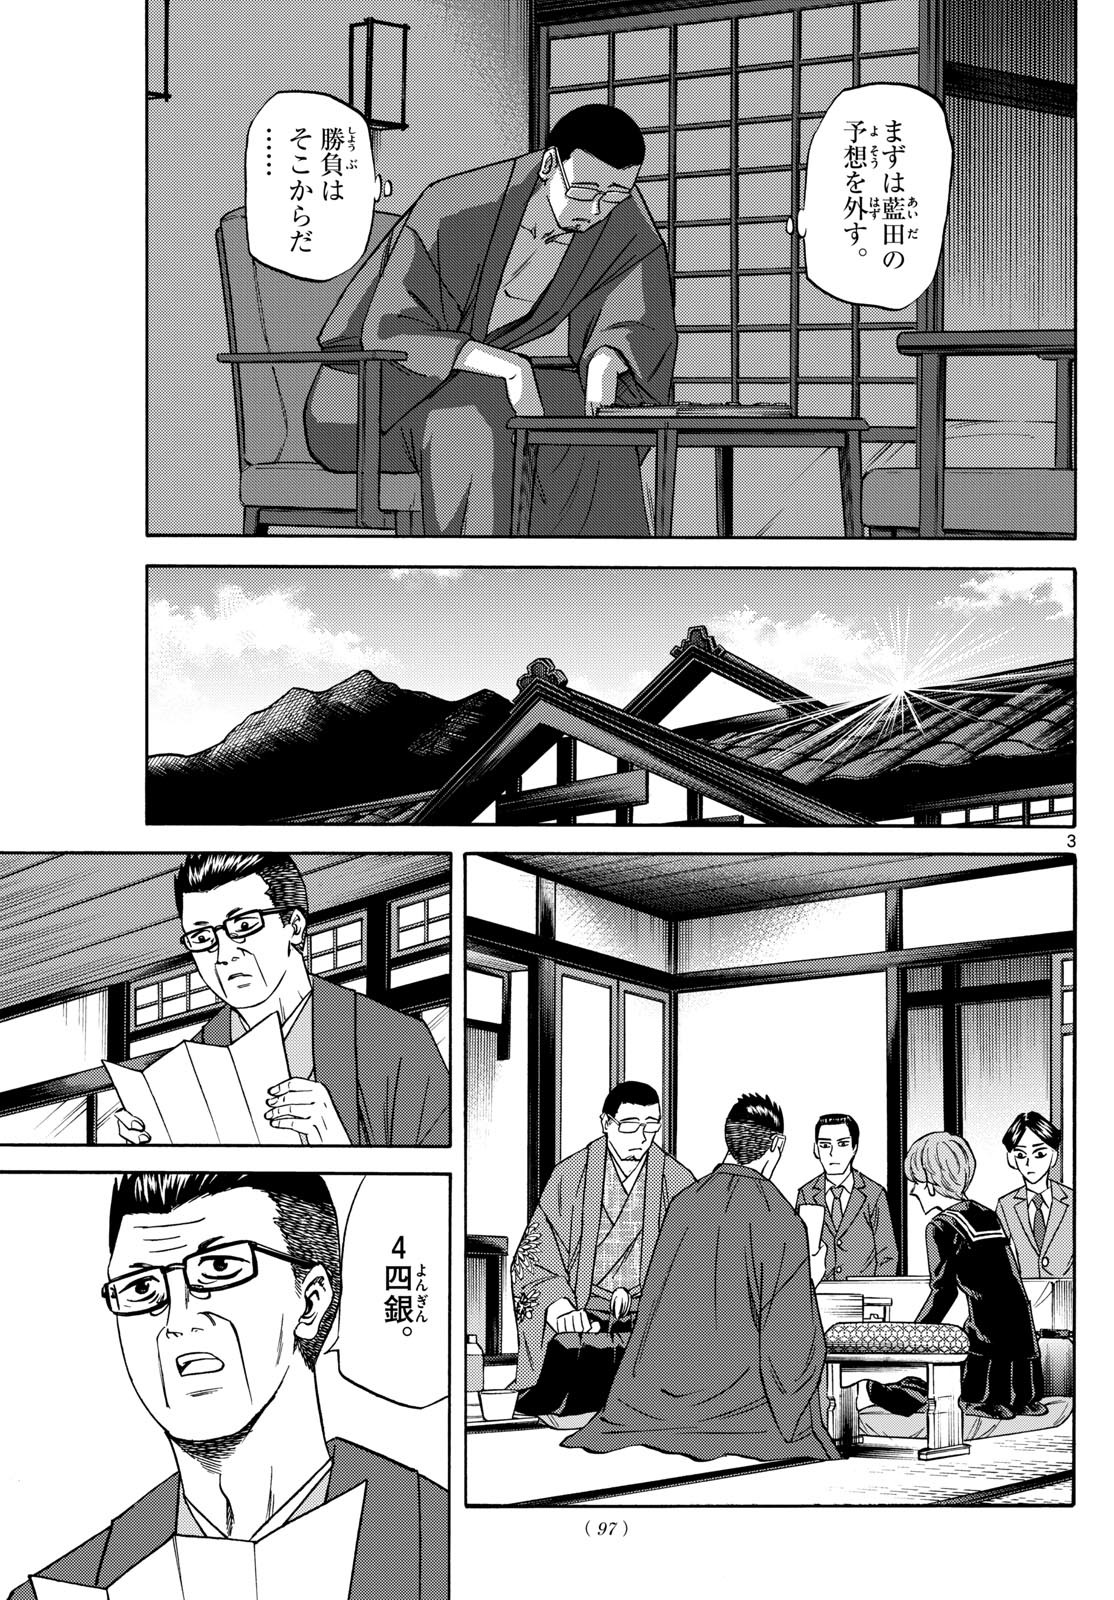 Ryu-to-Ichigo - Chapter 166 - Page 3